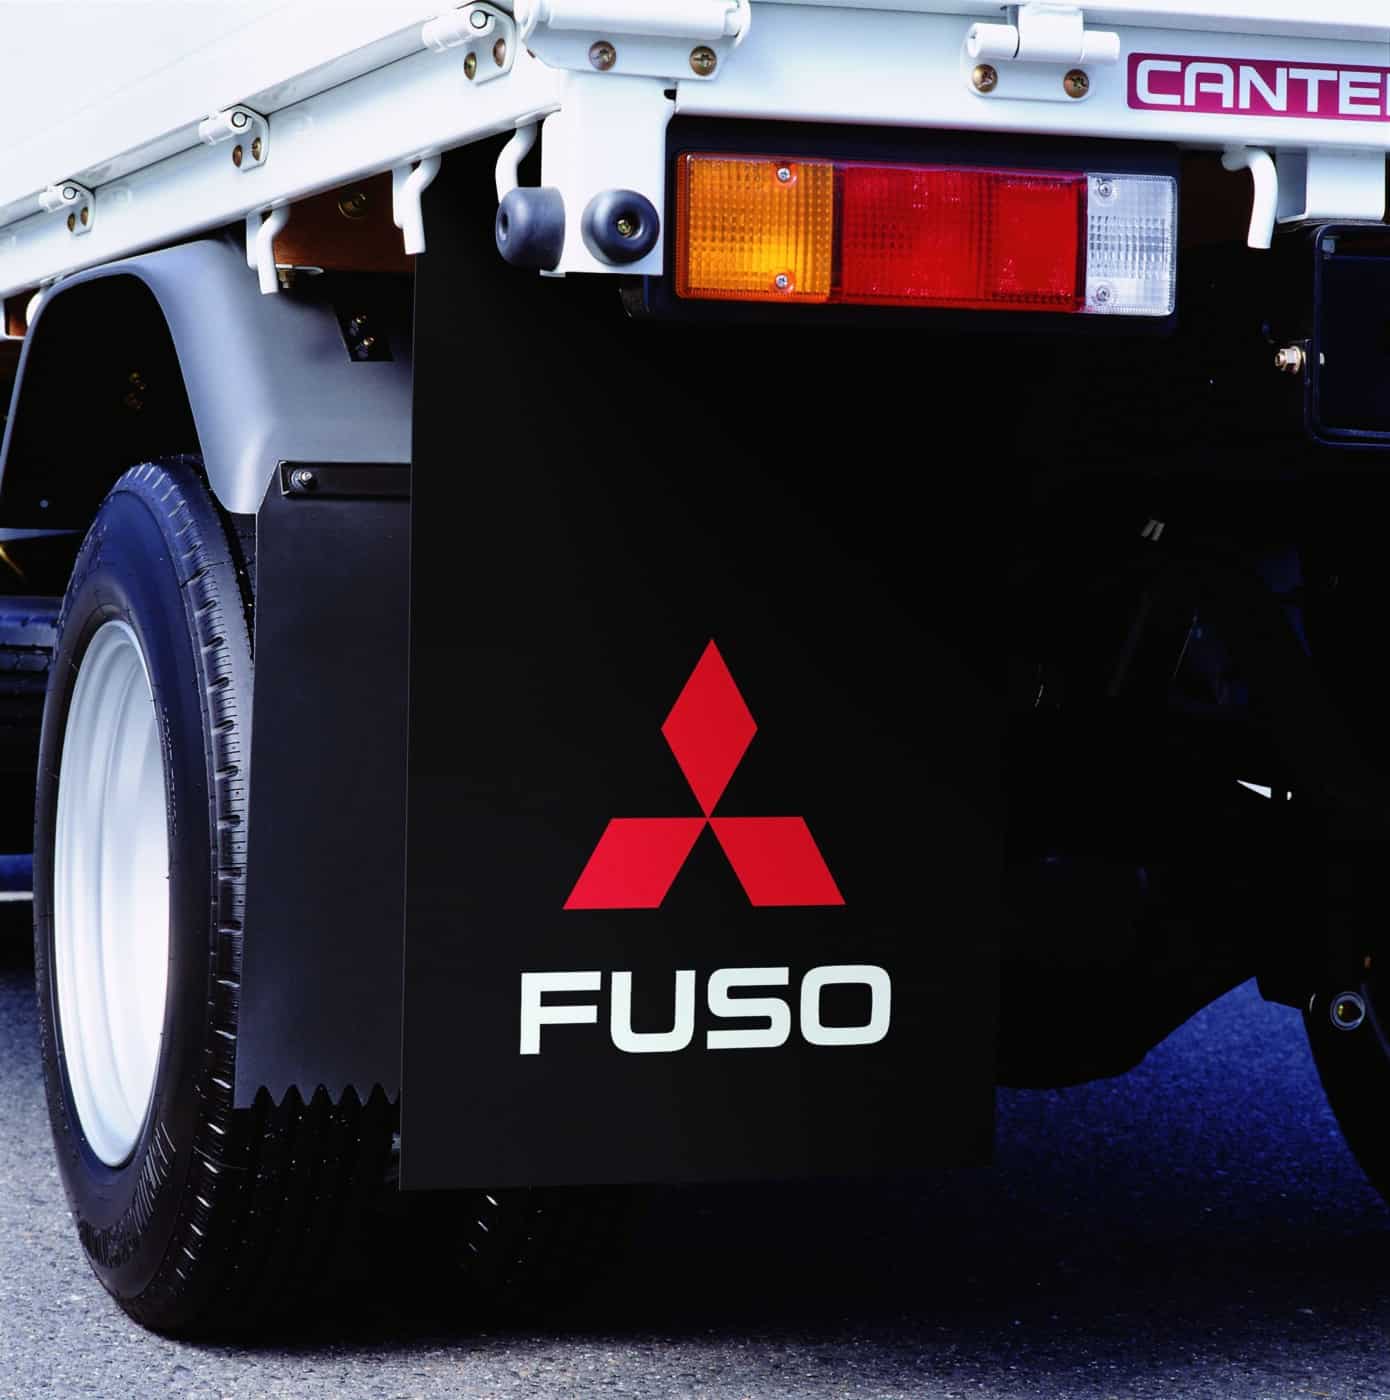 FUSO smussavviser beskytter kjøretøyet, passasjerene, andre kjøretøy og fotgjengere mot gjørme og tilsmussinger som dekkene virvler opp.